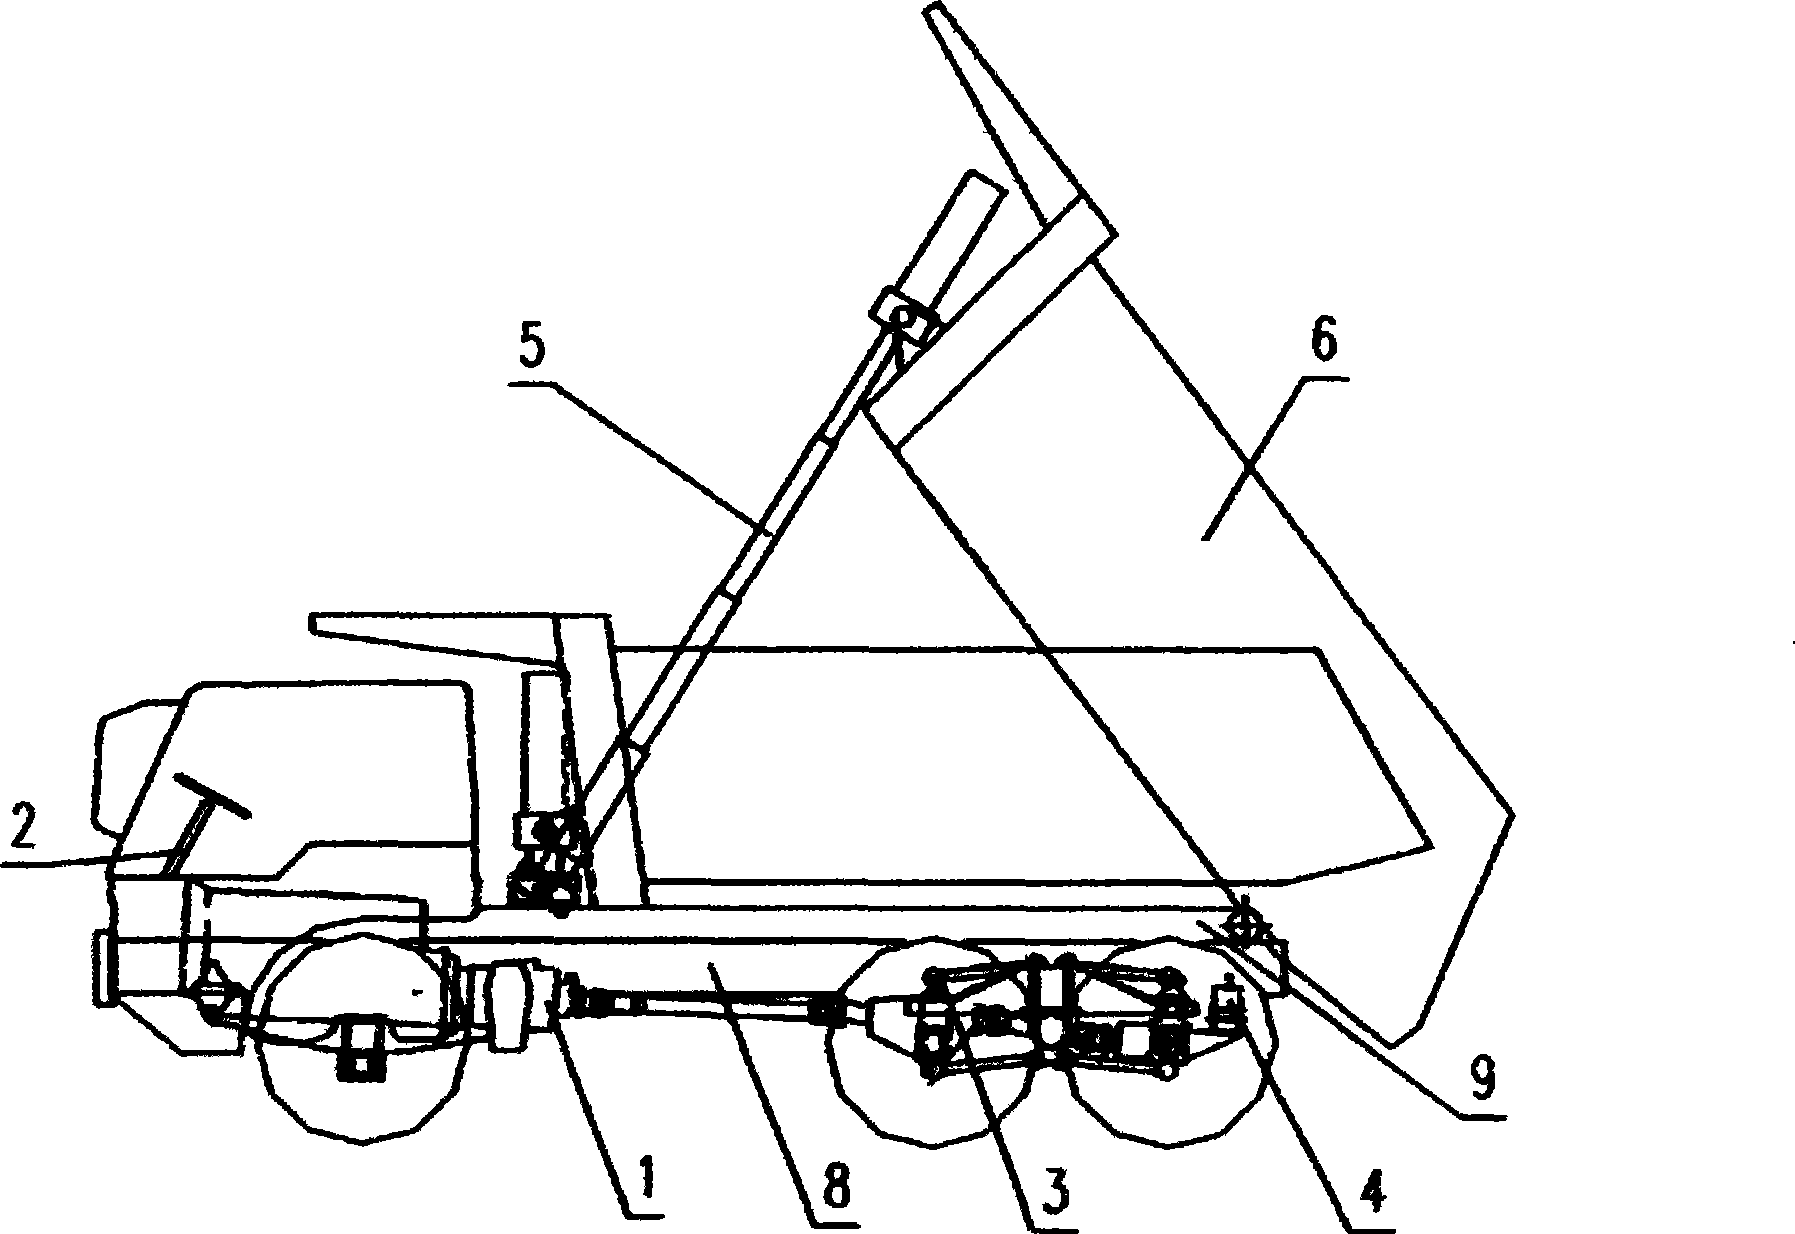 Design method for off-highway self-discharging vehicle